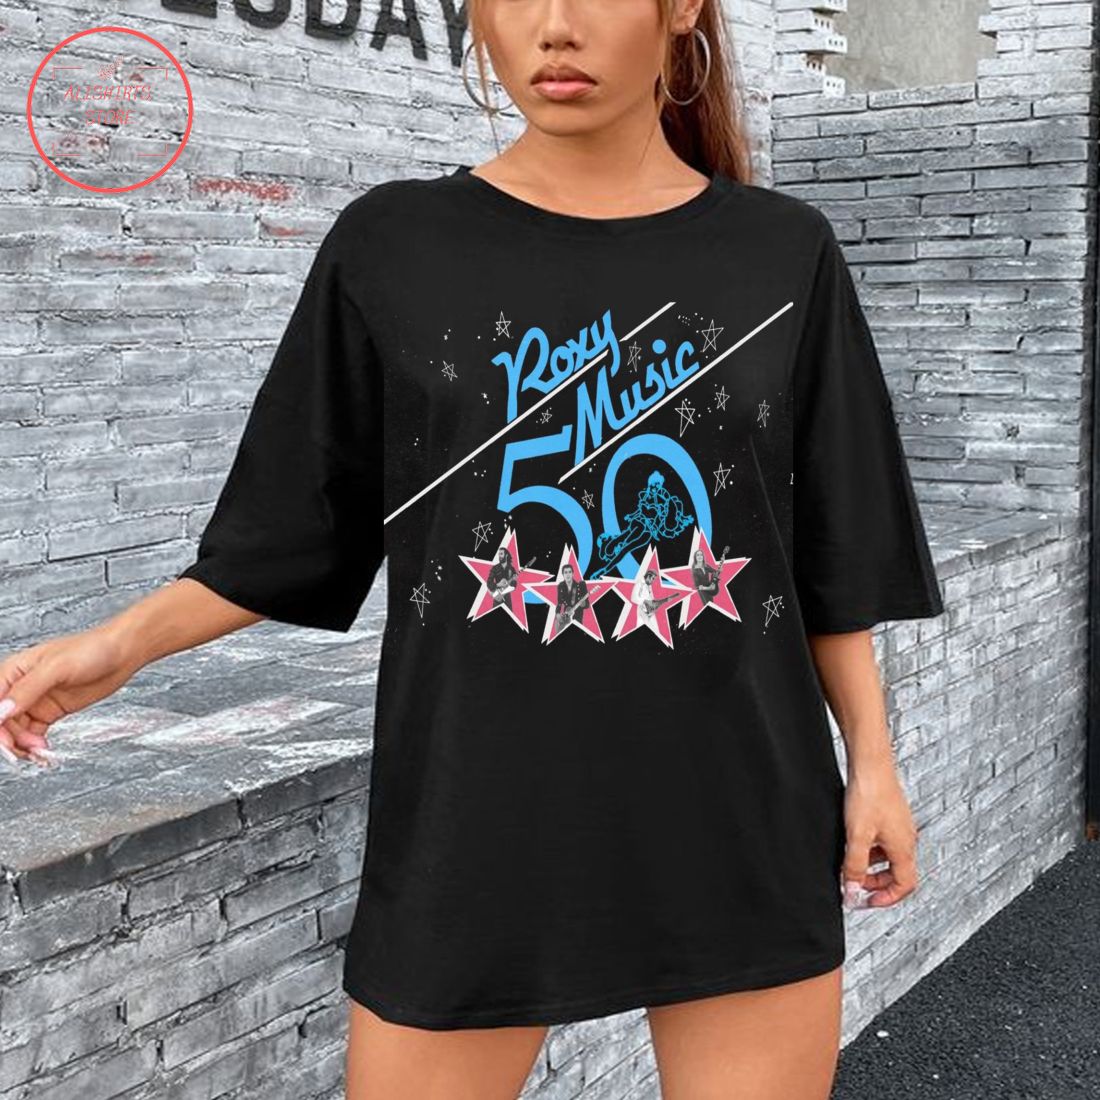 Roxy Music 2022 Tour 50th Anniversary Album T-Shirt